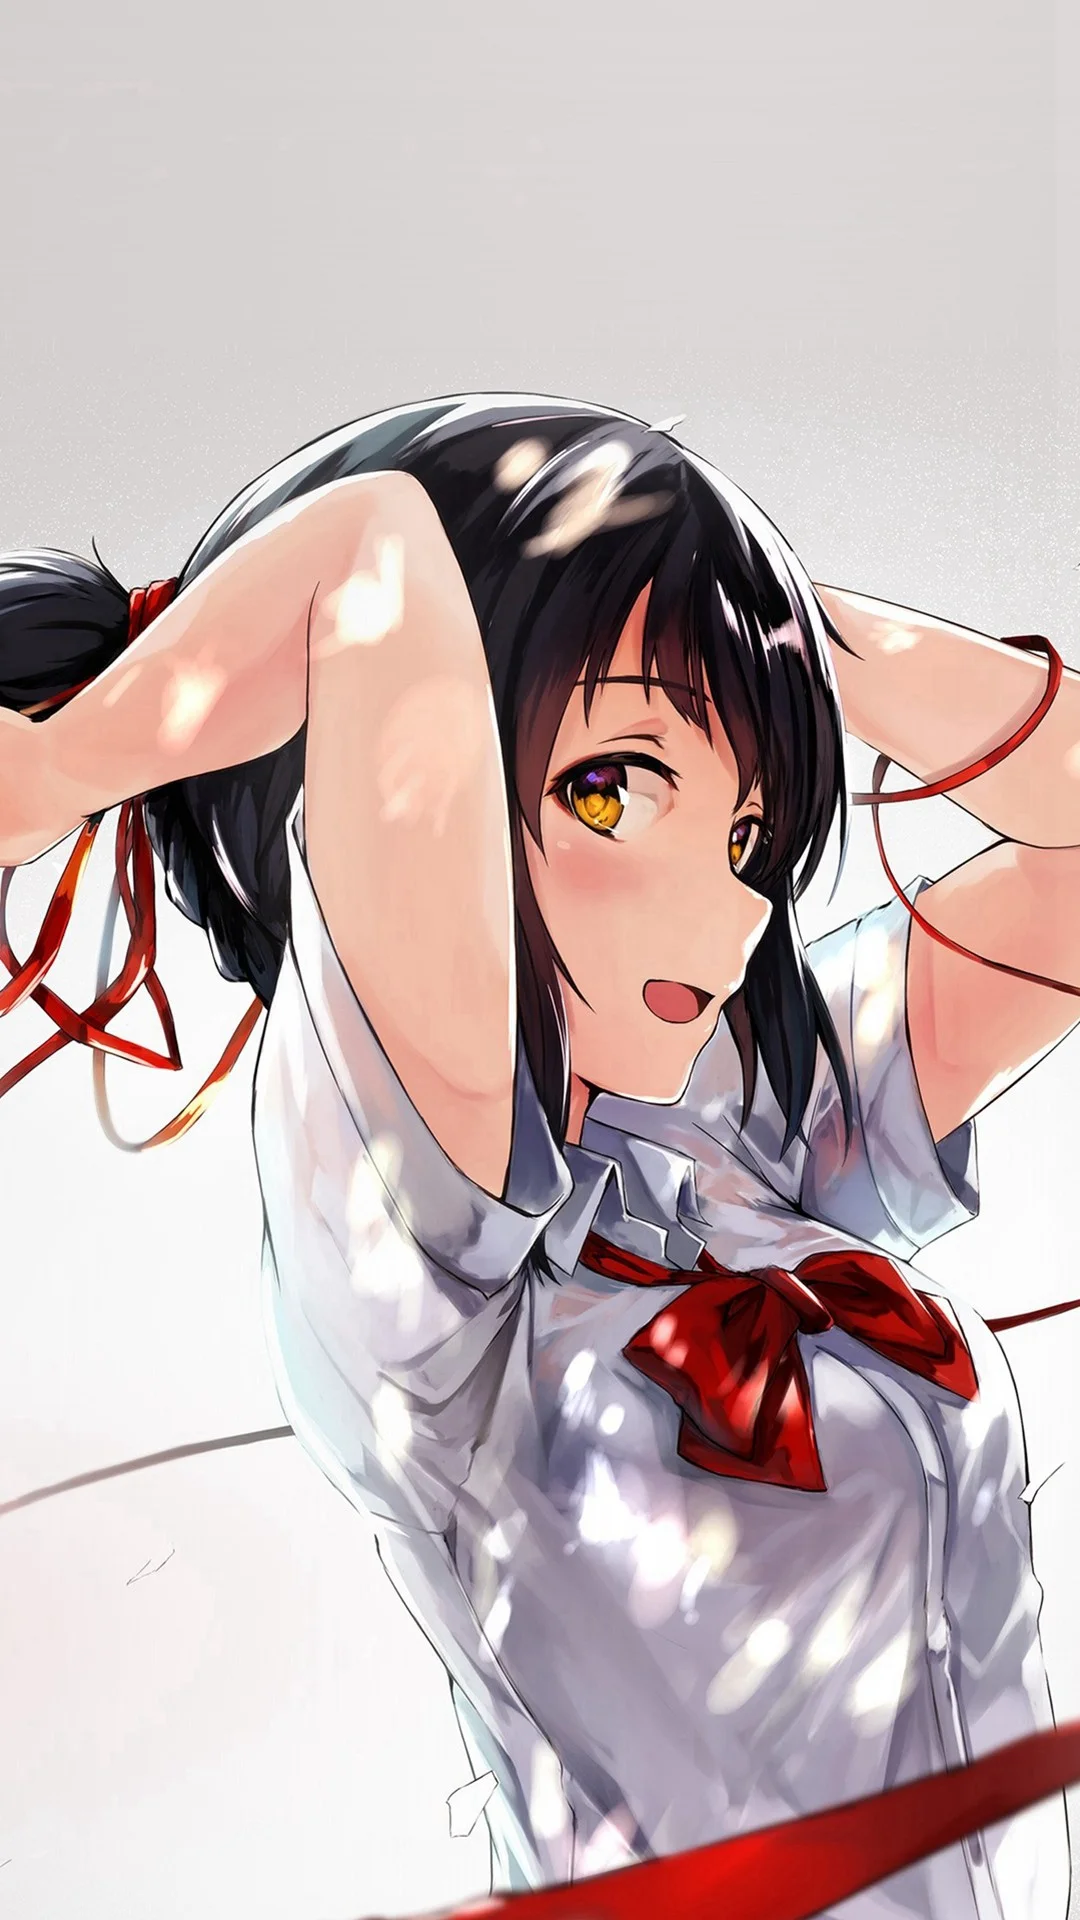 Yourname Anime Film Girl Red Ribbon Illustration Art #iPhone #wallpaper